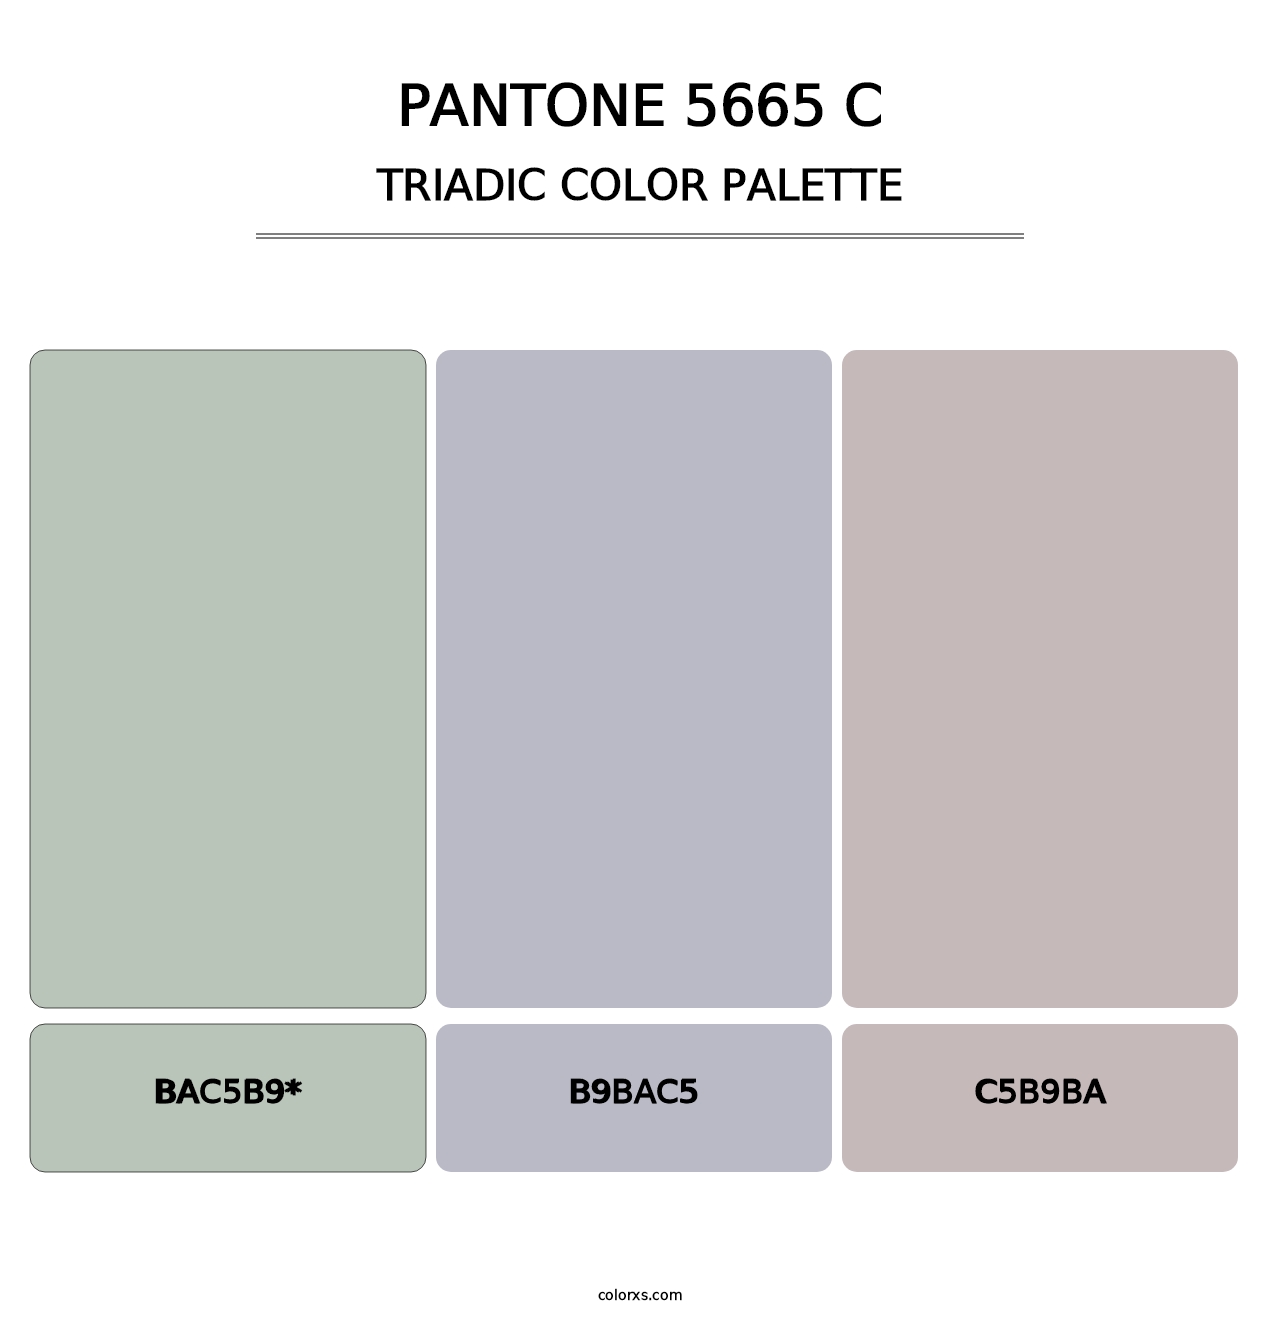 PANTONE 5665 C - Triadic Color Palette